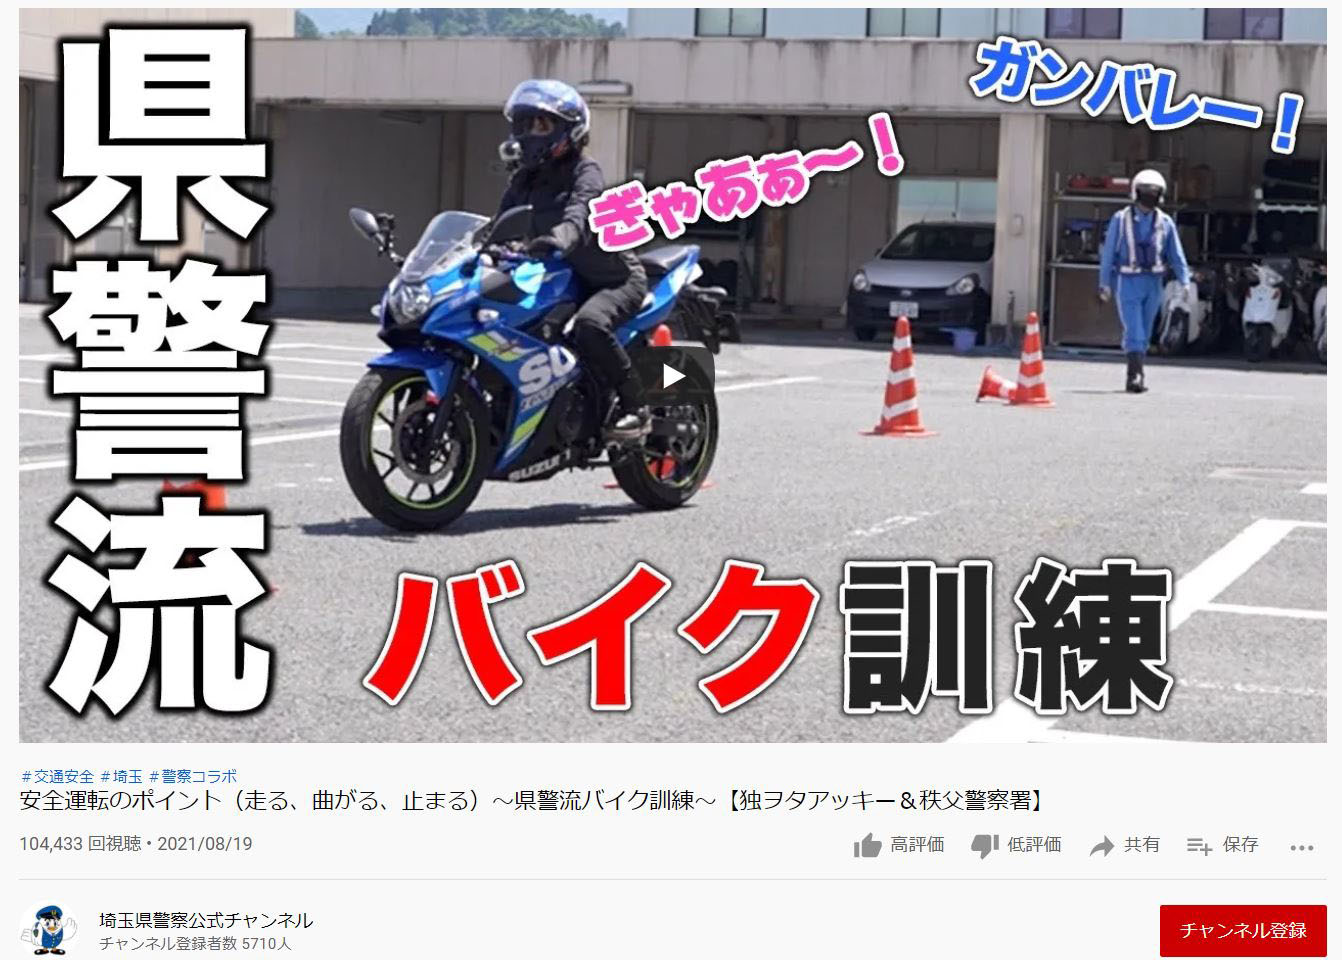 埼玉県警のバイク動画話題 ユーチューバーとコラボ 産経ニュース